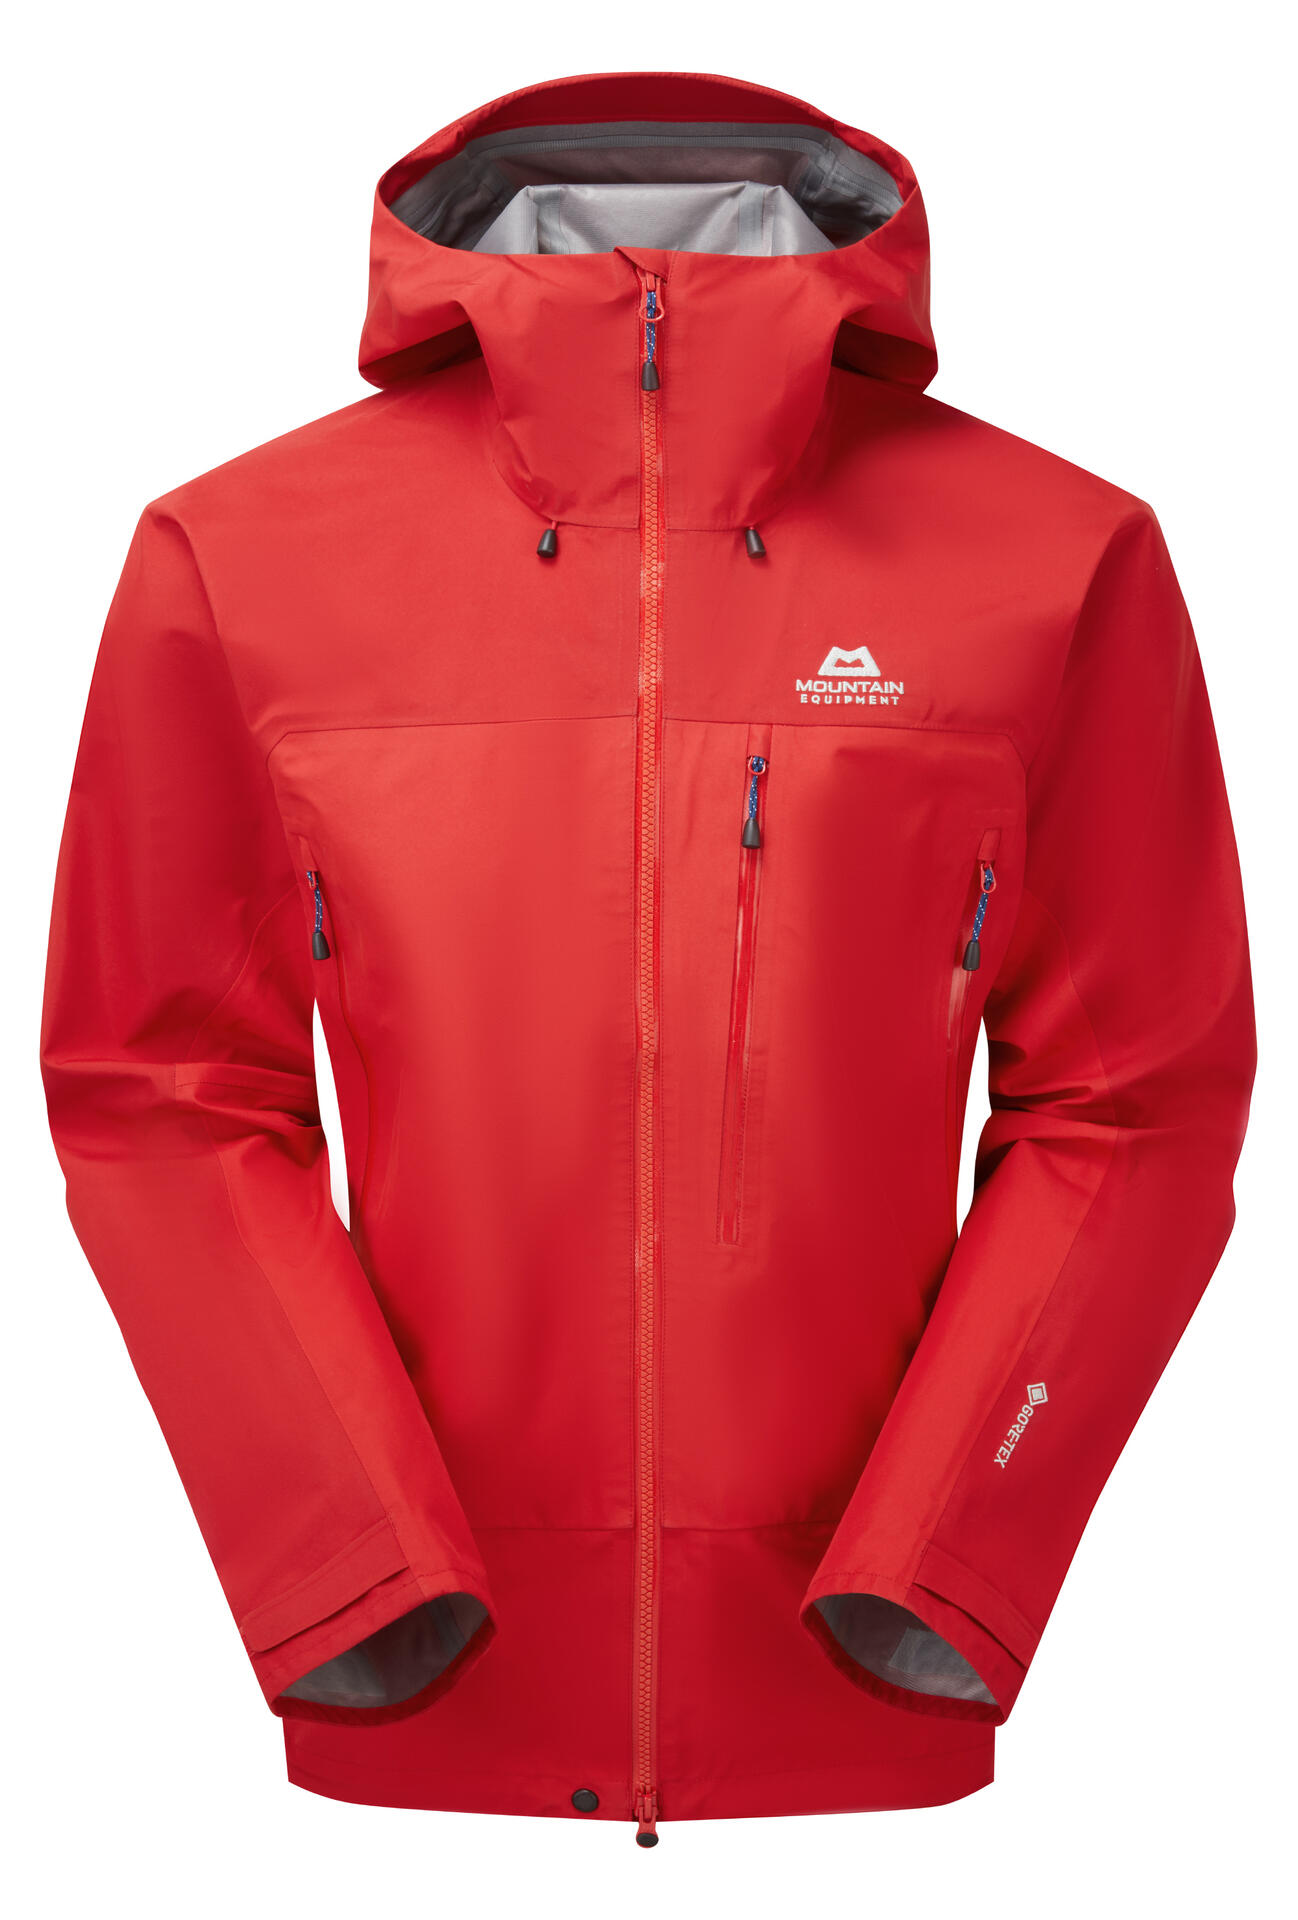 Mountain Equipment Makalu Jacket Men'S Barva: Imperial Red/Crimson, Velikost: M